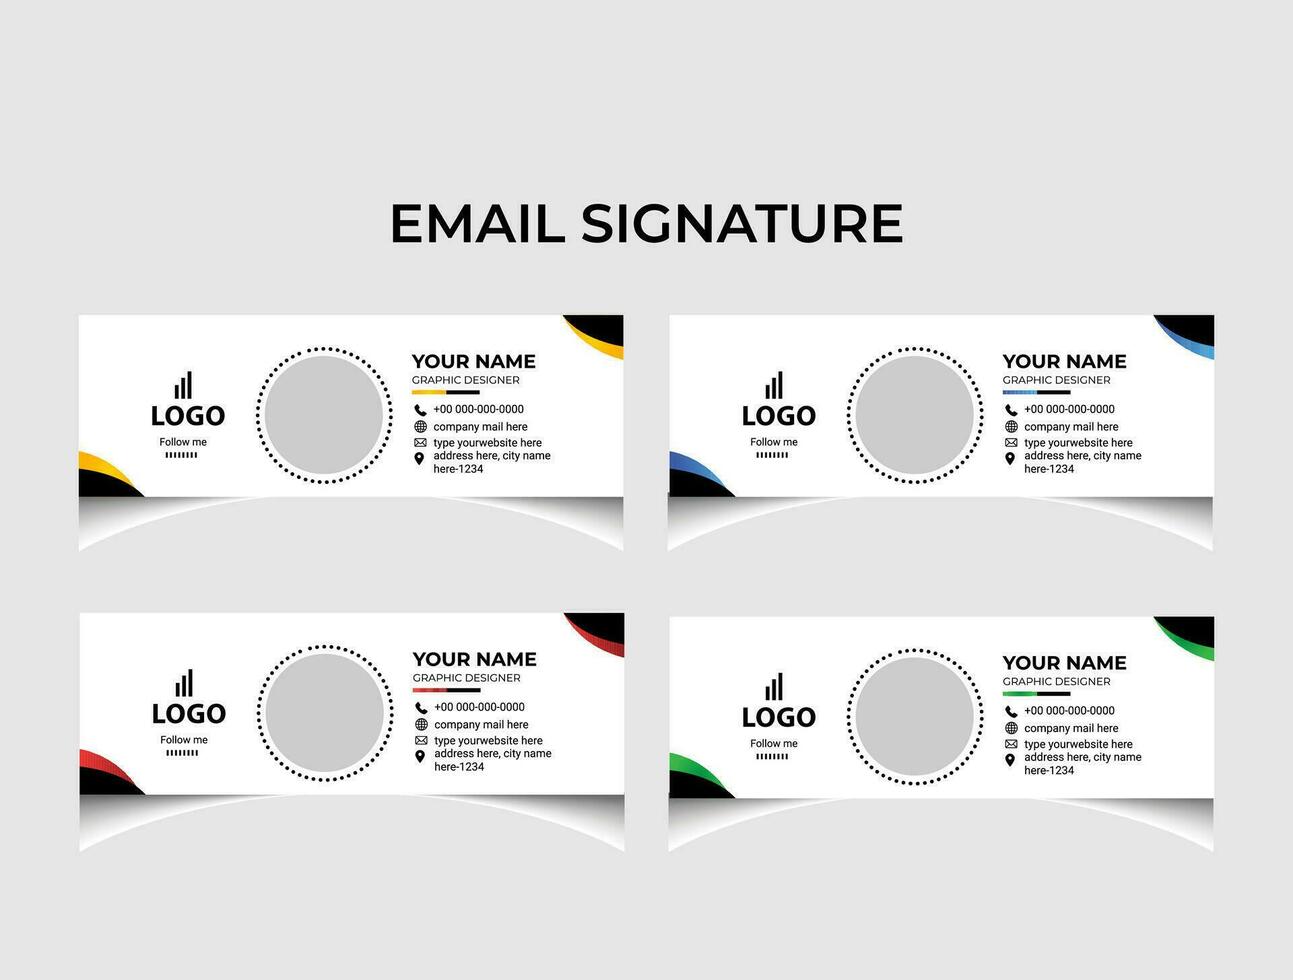 Minimalist email signature template design. vector